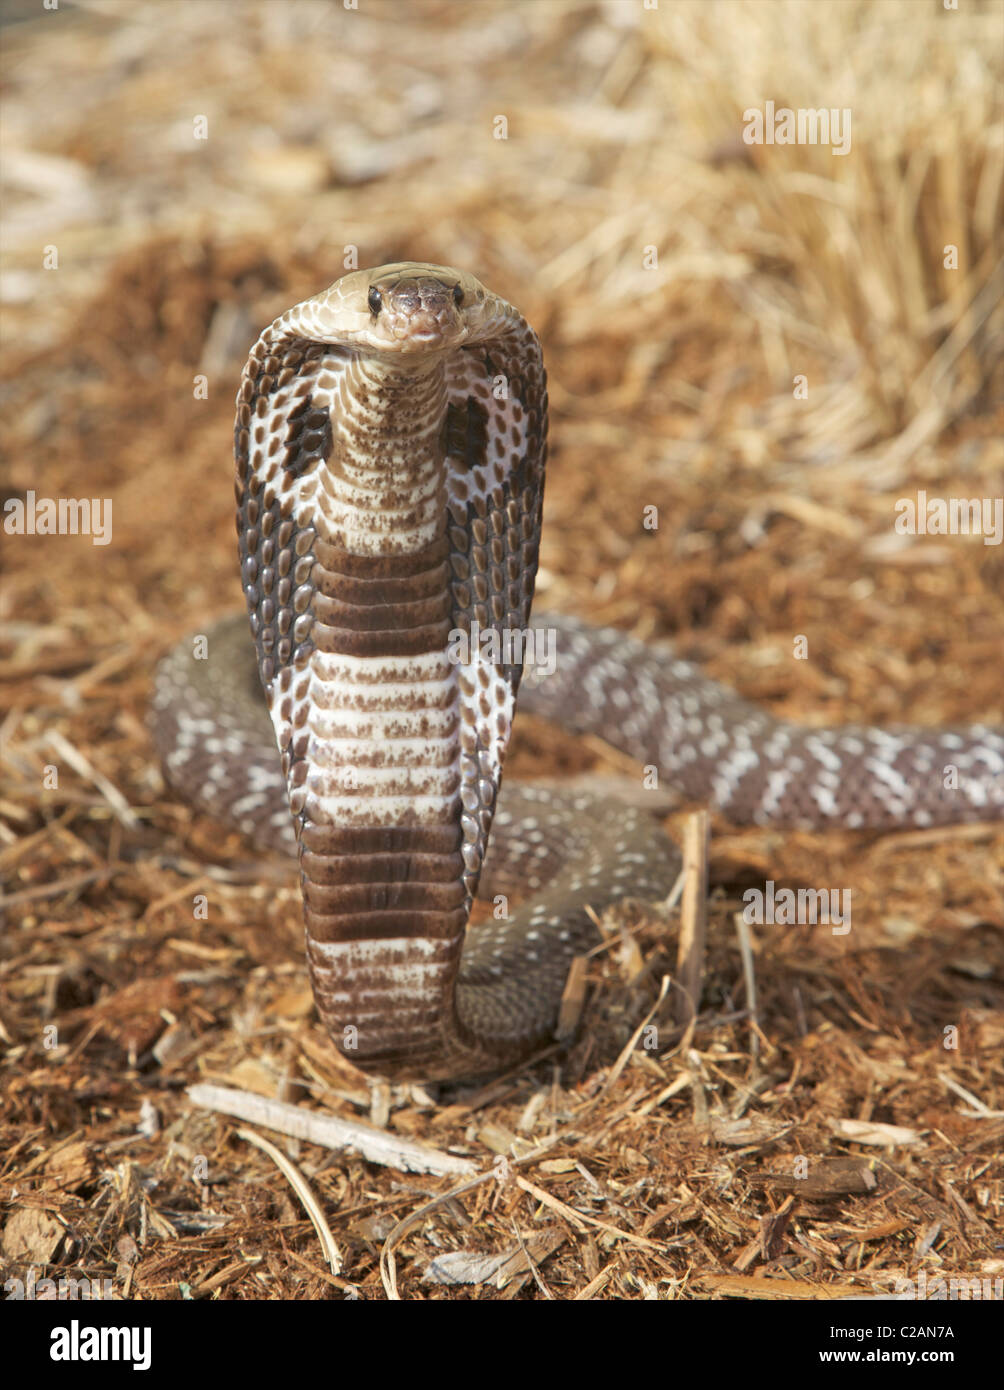 An alert Indian or Spectacled Cobra (Naja naja) Stock Photo